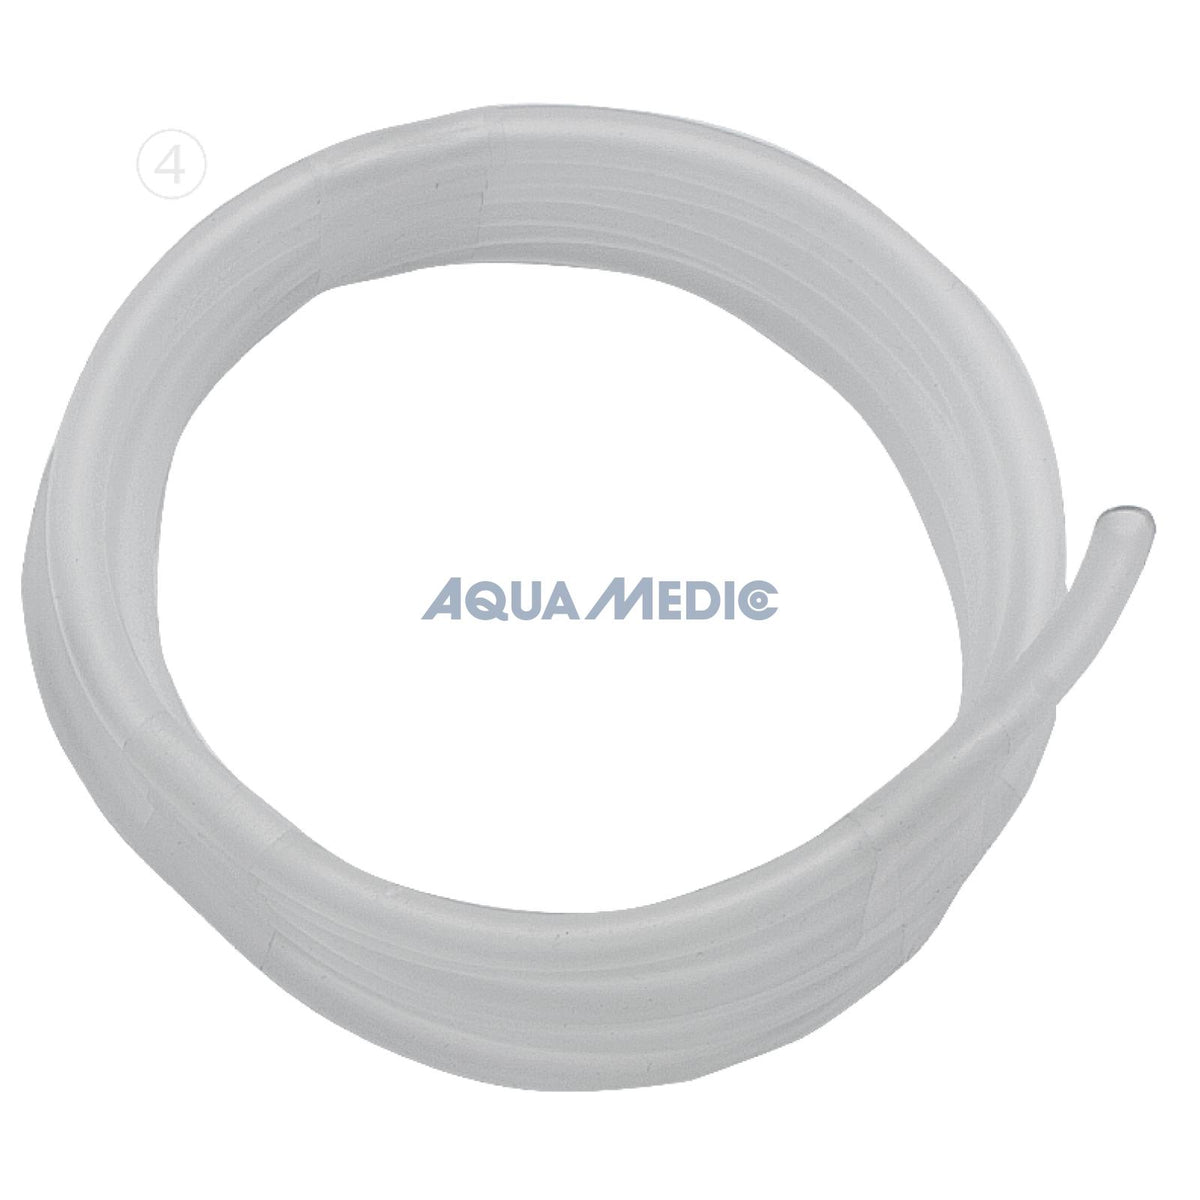 Aqua Medic CO2 slang 4-6 MM - 5M